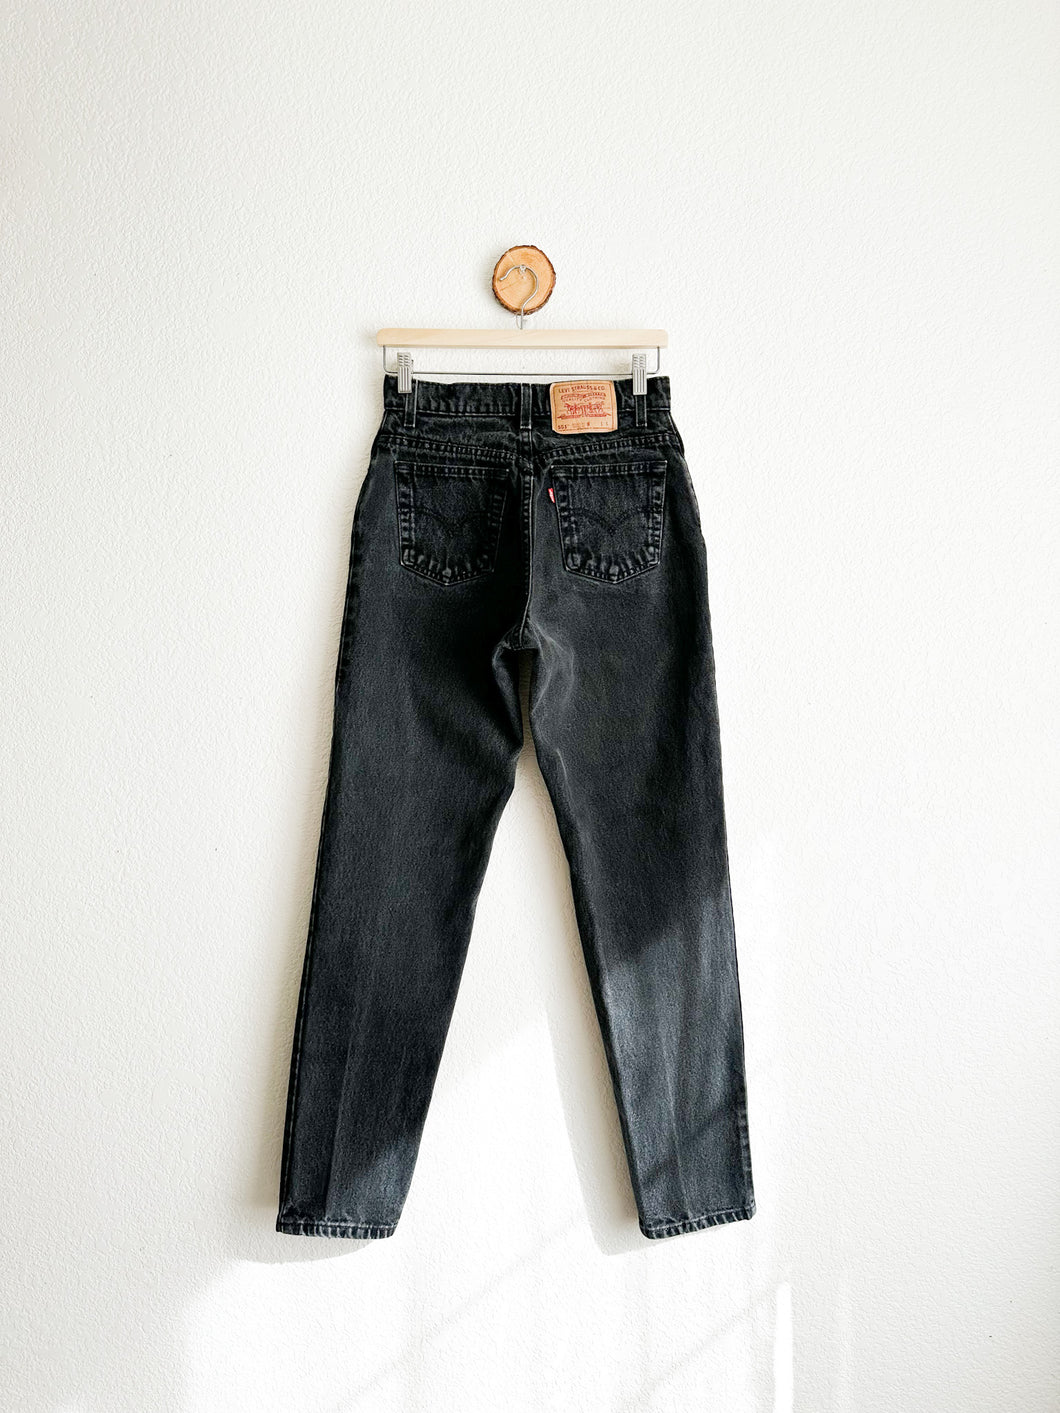 Vintage Levi's 551 Jeans - 27.5